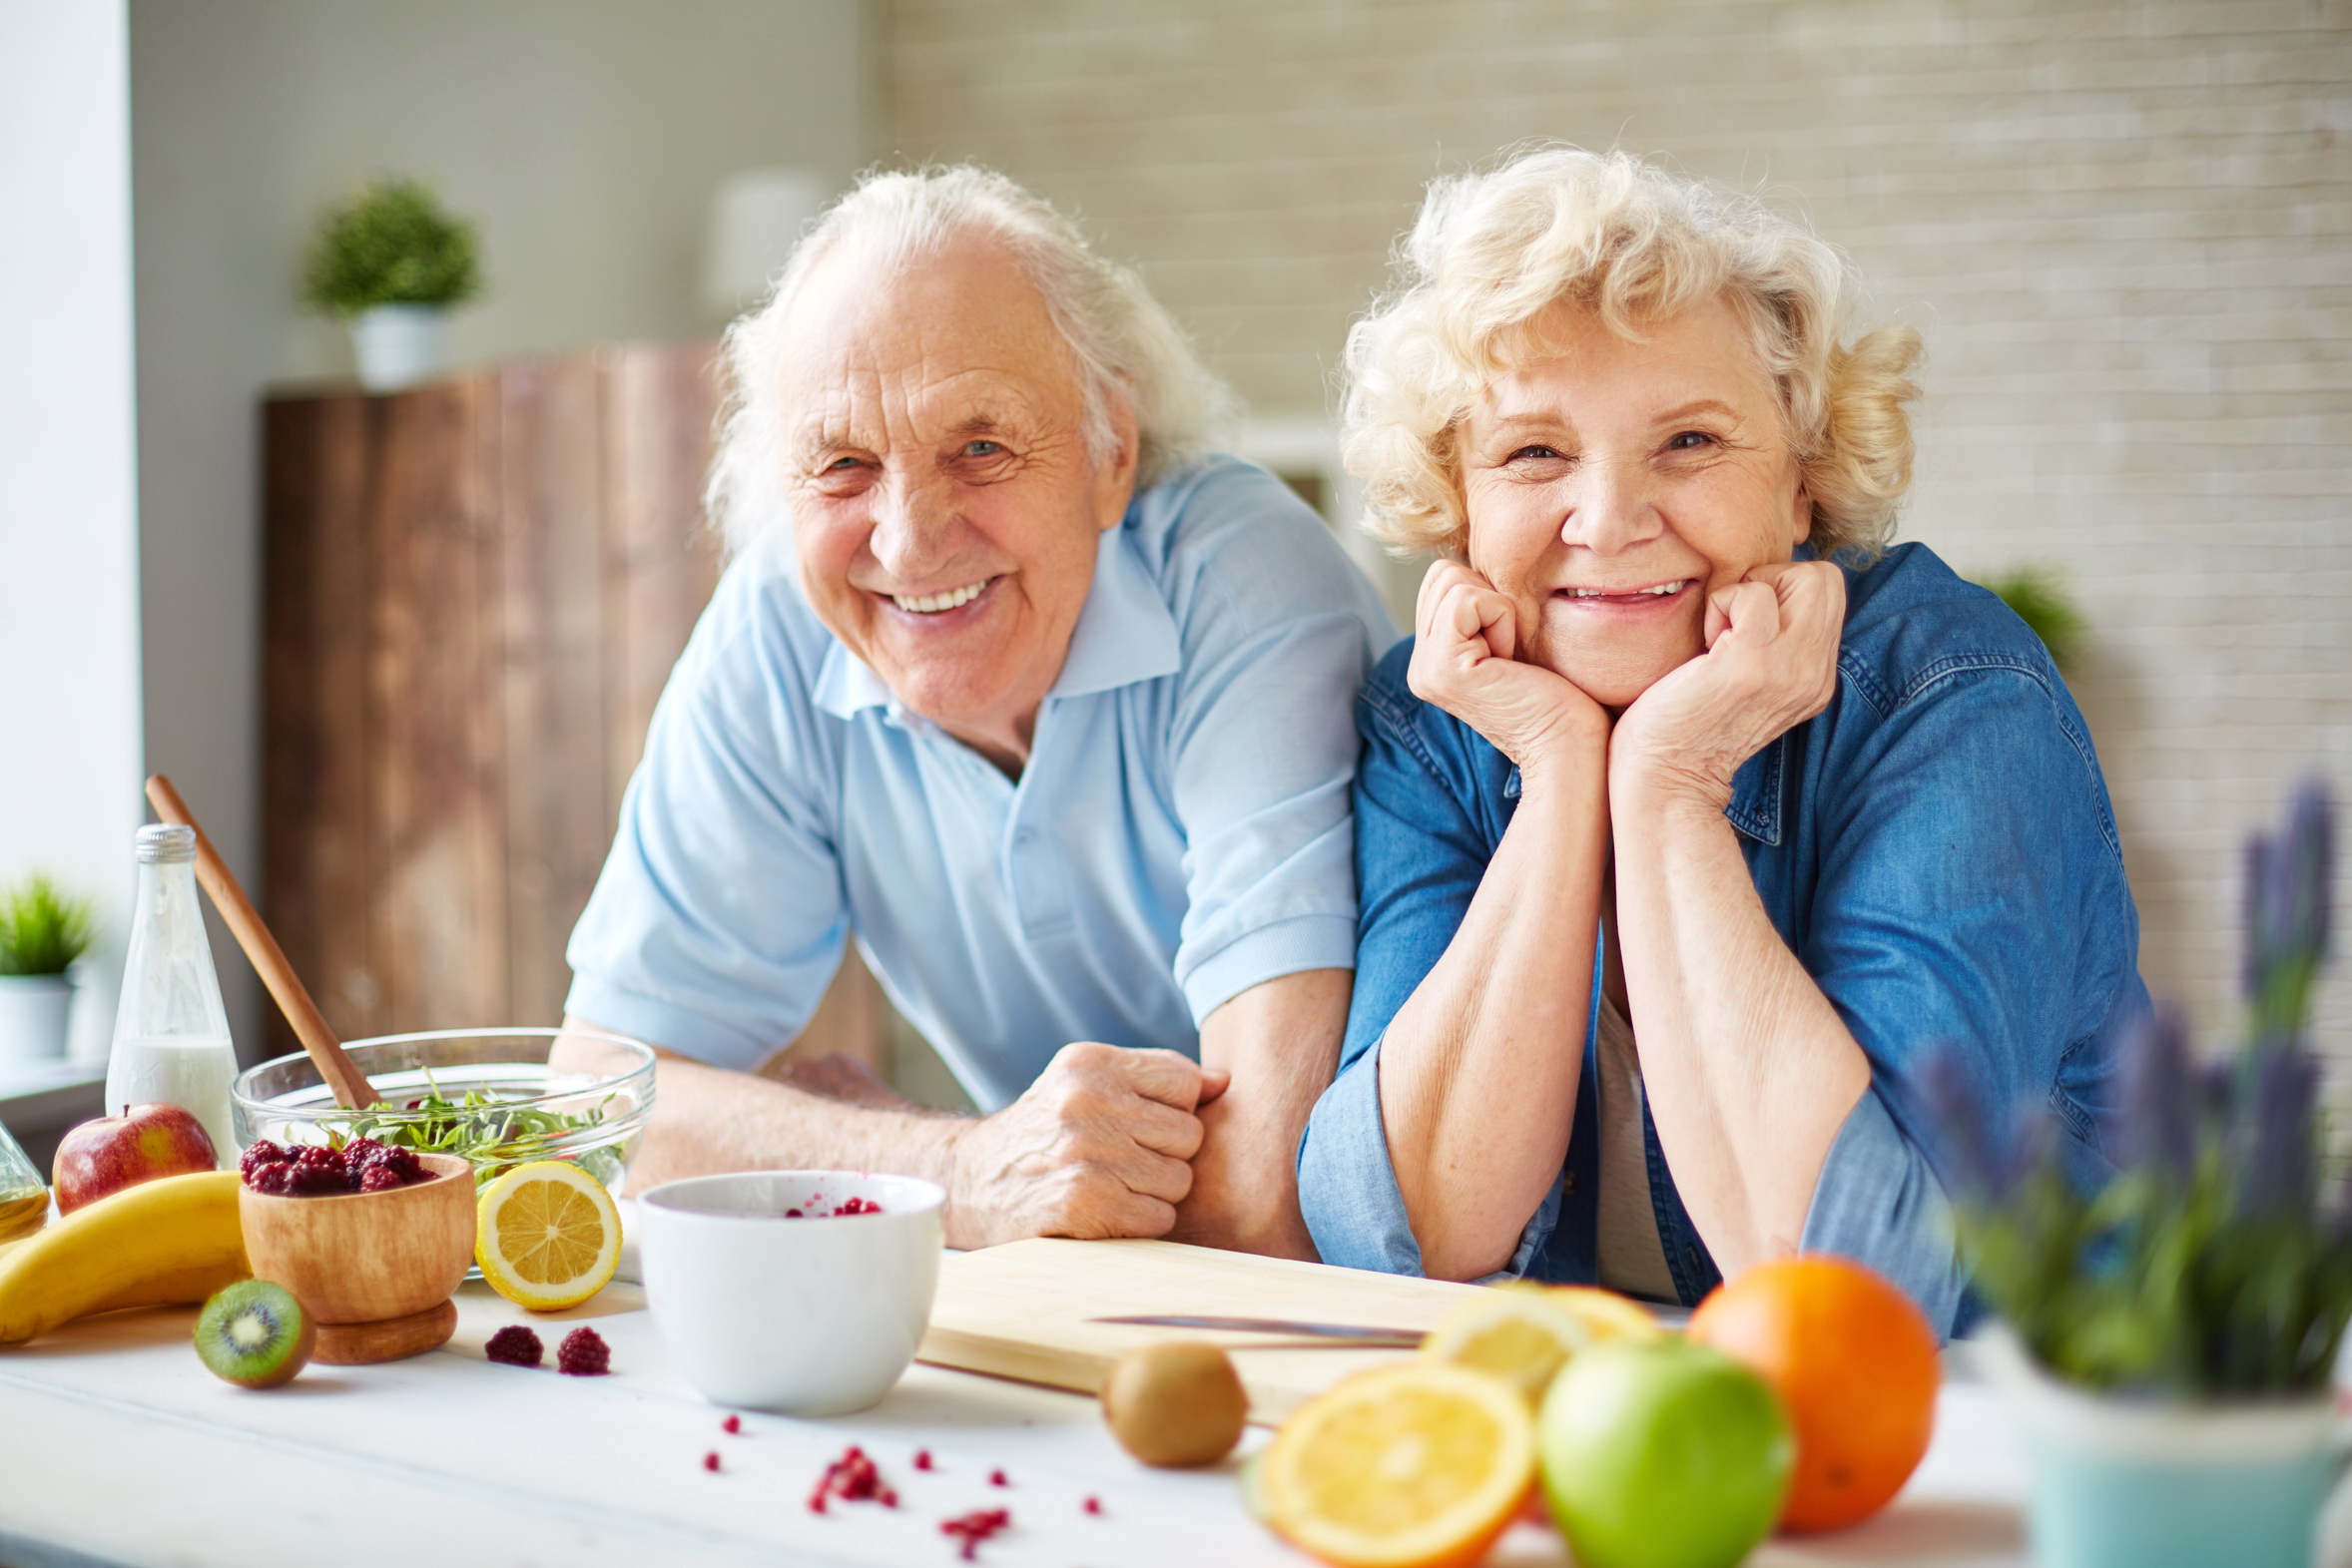 Zwei Senioren lehnen auf einem Küchentisch auf dem Früchte liegen.